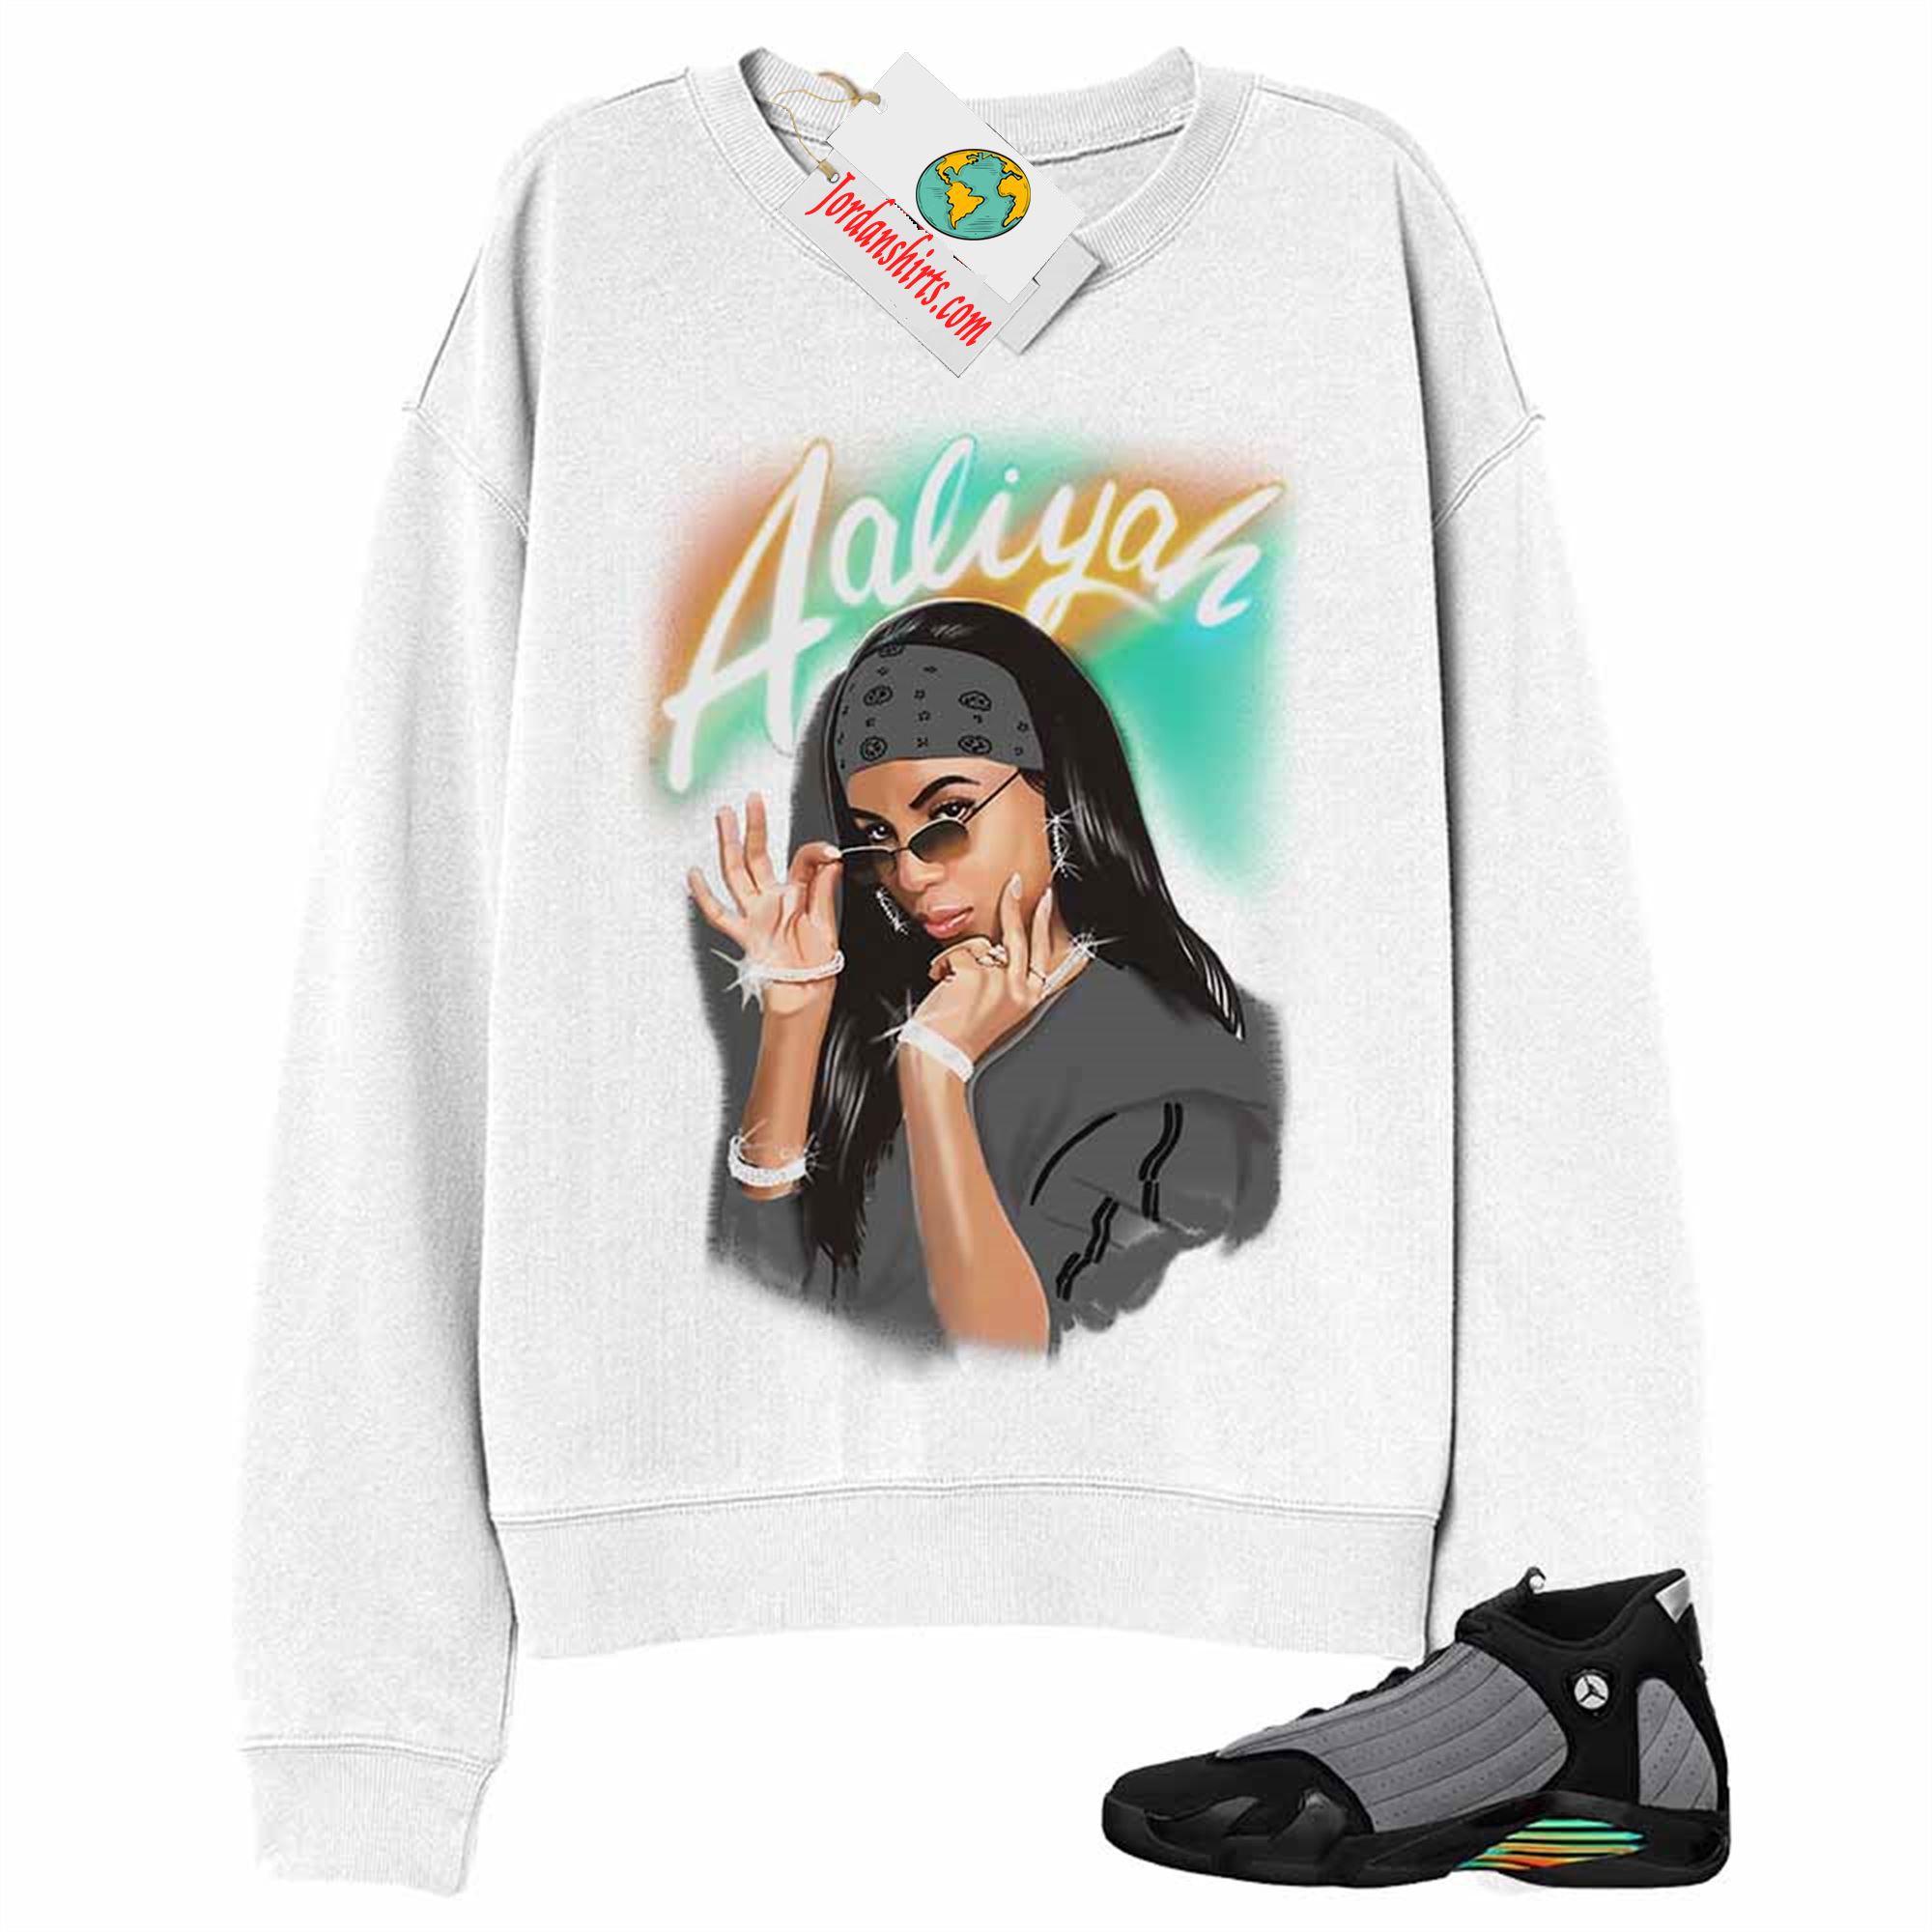 Jordan 14 Sweatshirt, Aaliyah Airbrush White Sweatshirt Air Jordan 14 Black Particle Grey 14s Full Size Up To 5xl